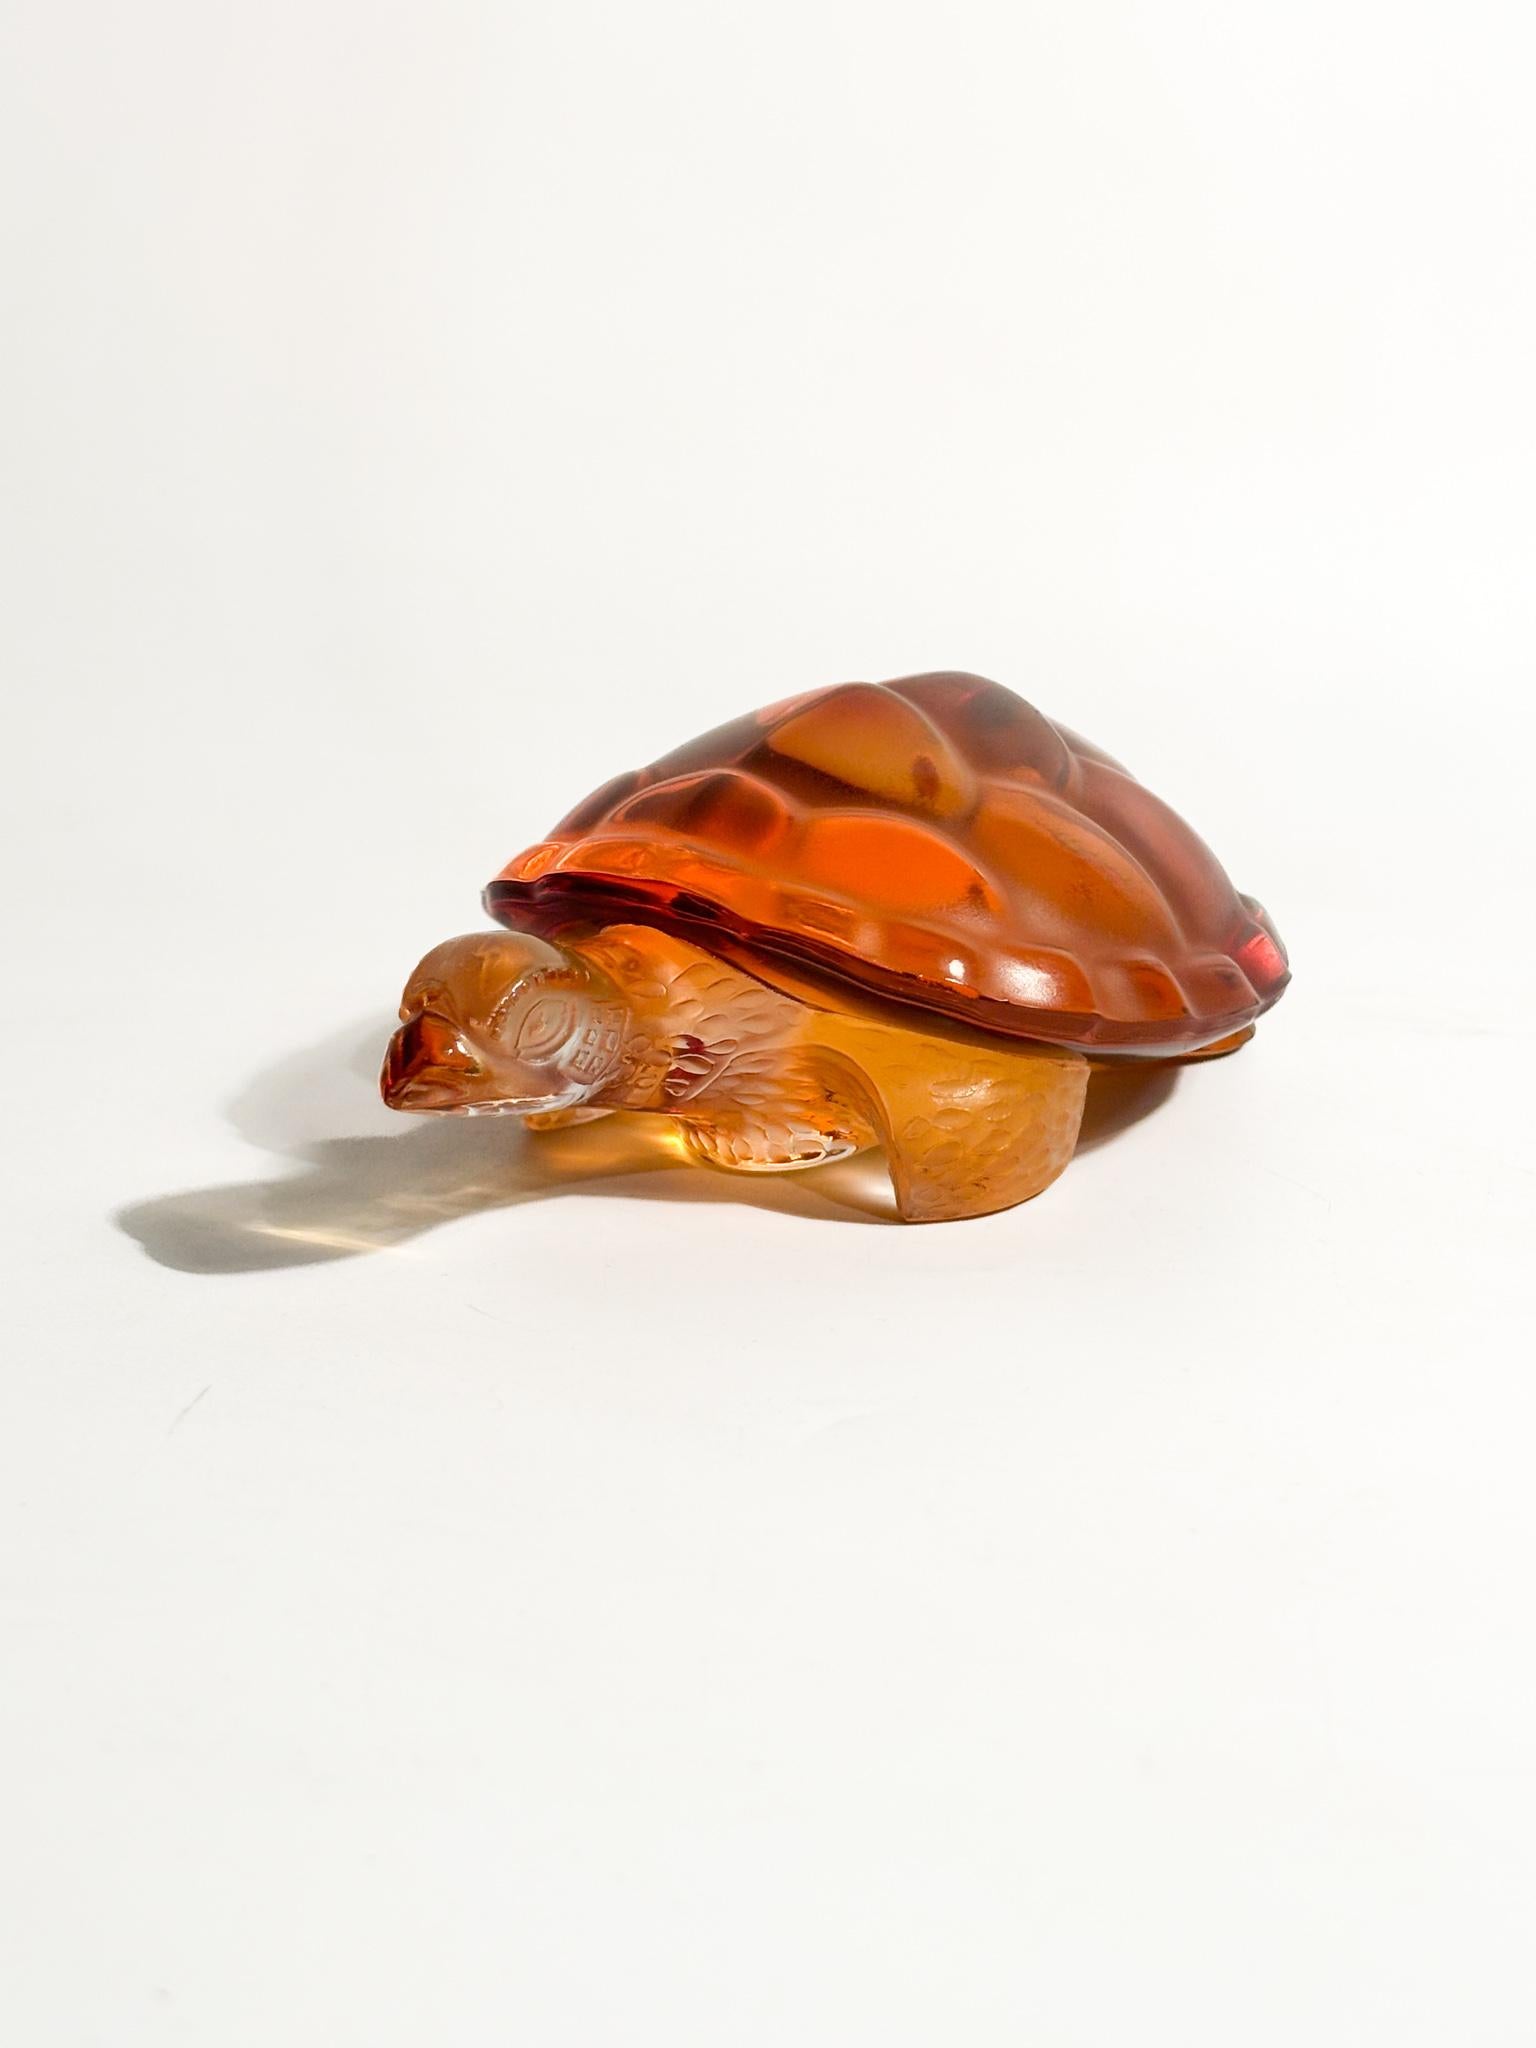 Sculpture de tortue en cristal orange de Lalique, réalisée dans les années 50

Ø cm 10 Ø cm 14,5 h cm 5

Le cristal Lalique désigne la verrerie produite par la marque de luxe française Lalique. Lalique est célèbre pour ses sculptures, vases, bols,